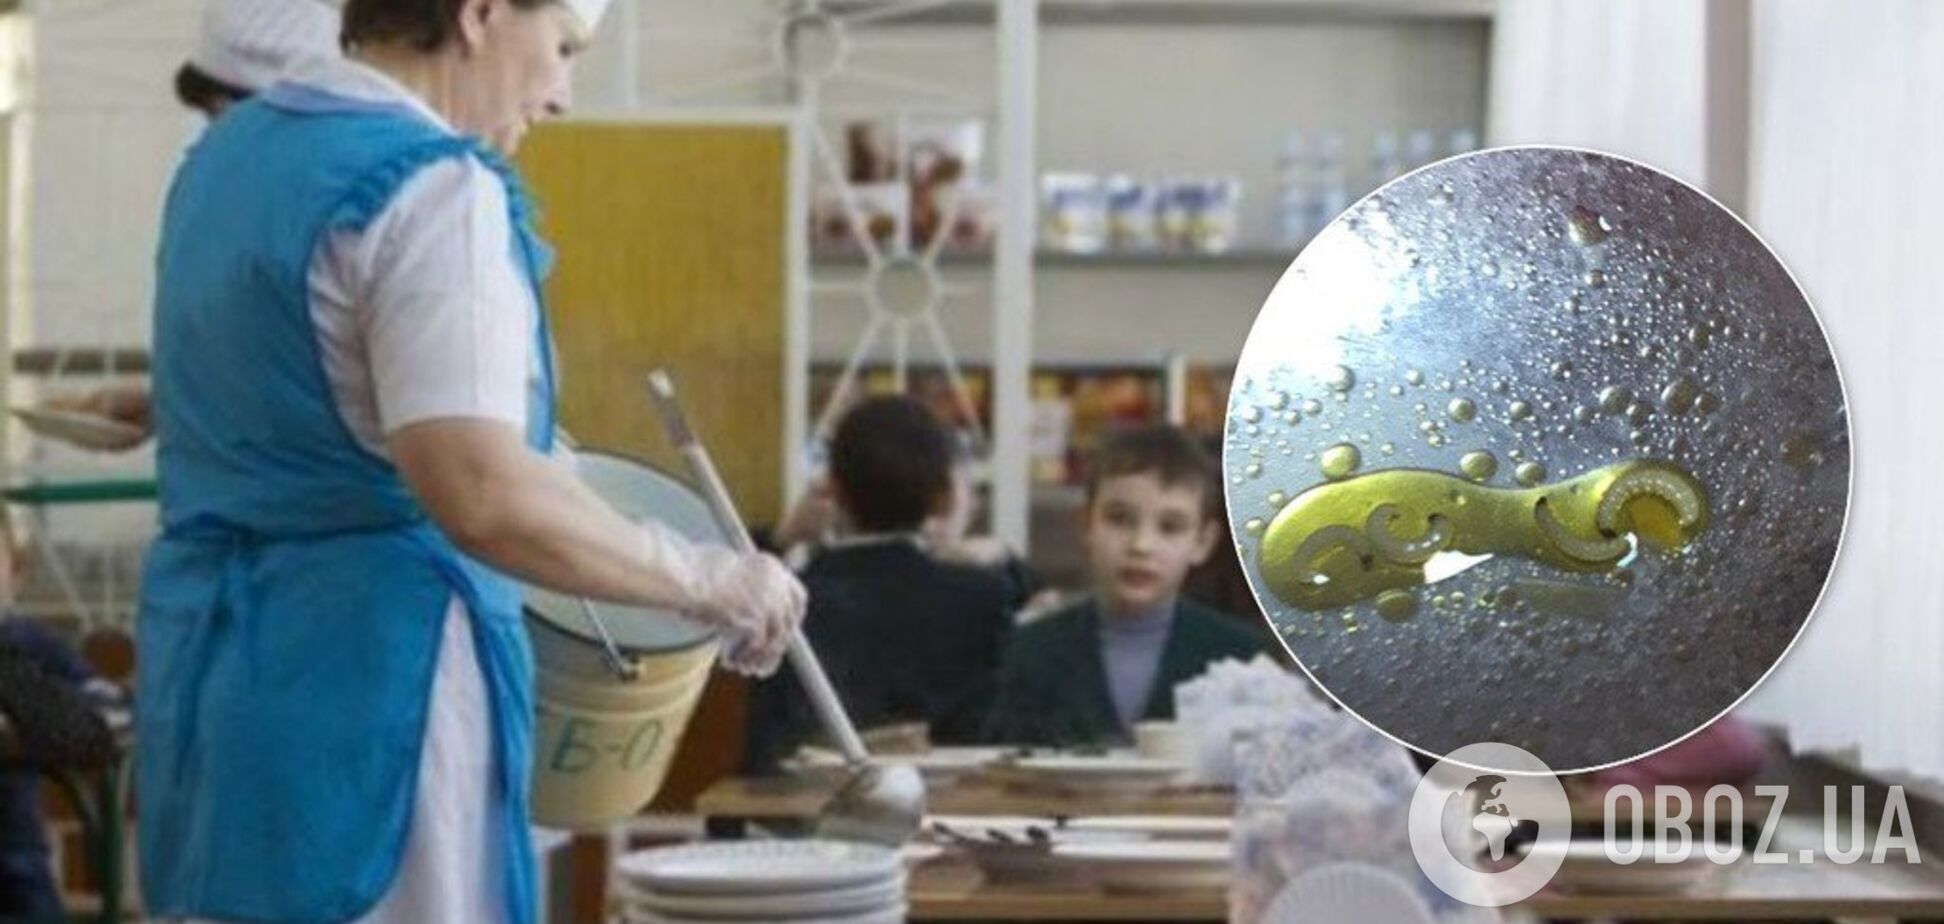 Хробаки на обід: школа в Одесі потрапила в скандал через їдальню